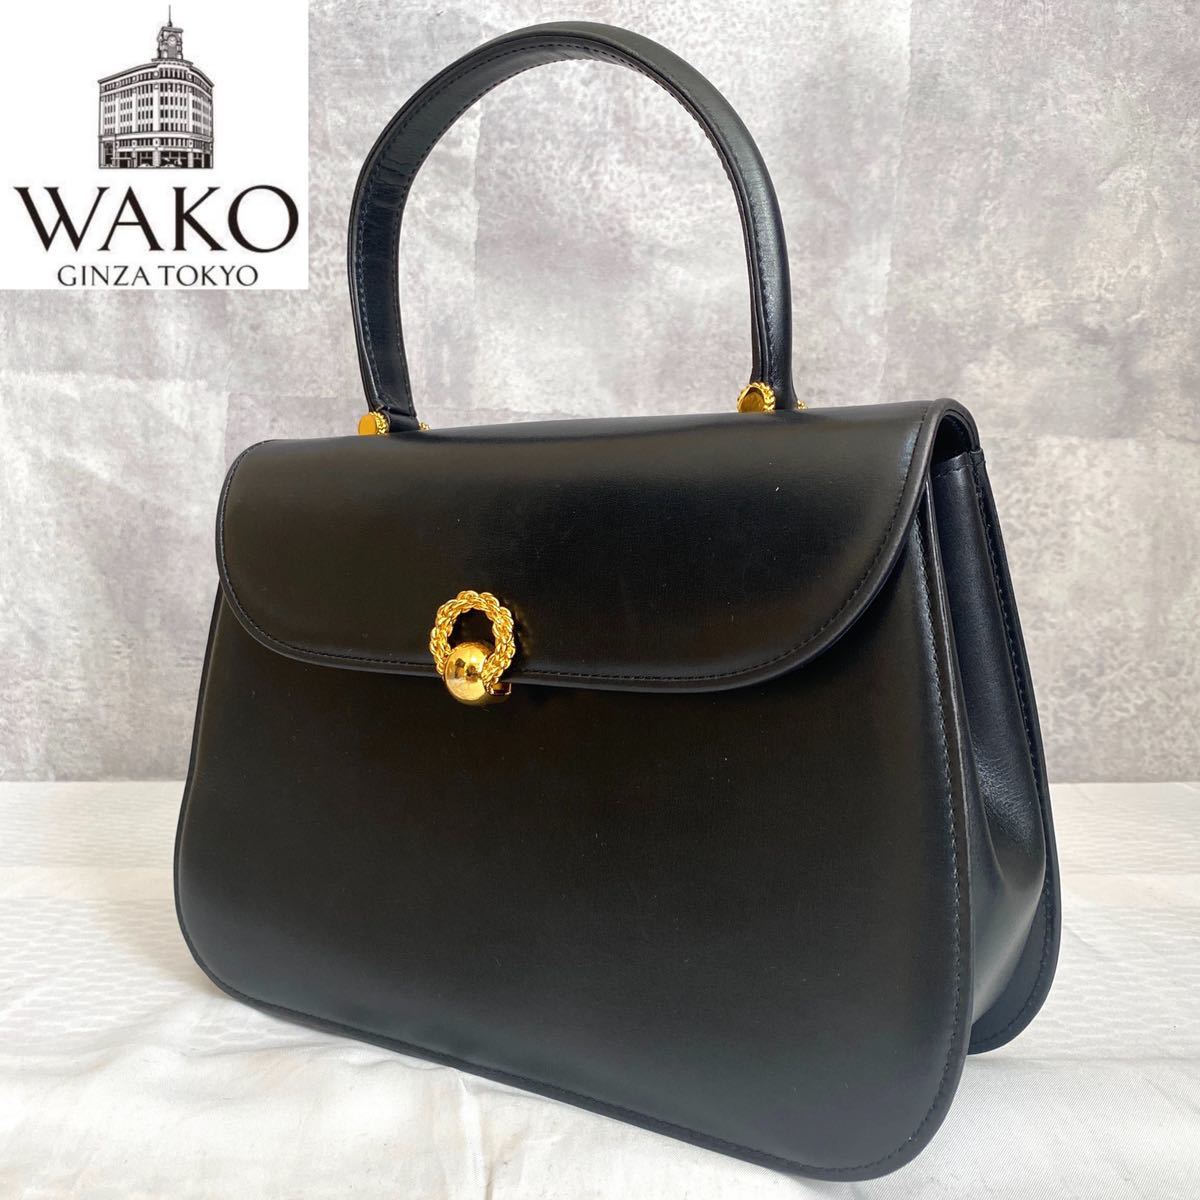 WAKO ワコウ 銀座 和光 定価12万 極上 カーフレザー ゴールド金具 黒 ブラック フォーマル ハンドバッグ トートバッグ ショルダーバッグ